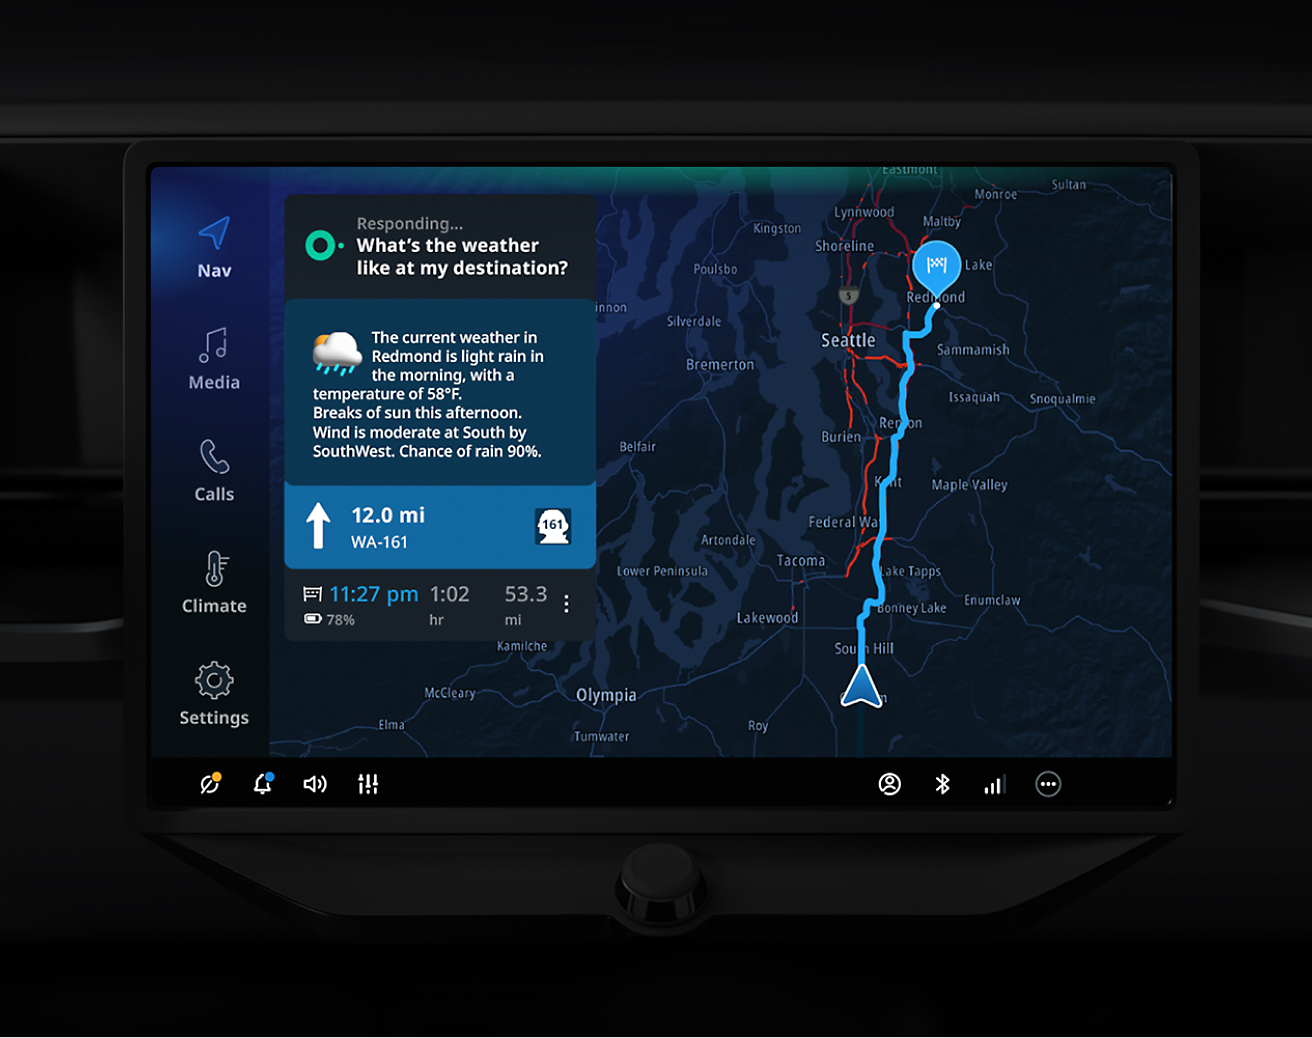 Die Touchscreen-Anzeige des Autos zeigt eine Navigationskarte mit einer Wettervorhersage für die Region Seattle und verschiedenen Steuerungseinstellungen.